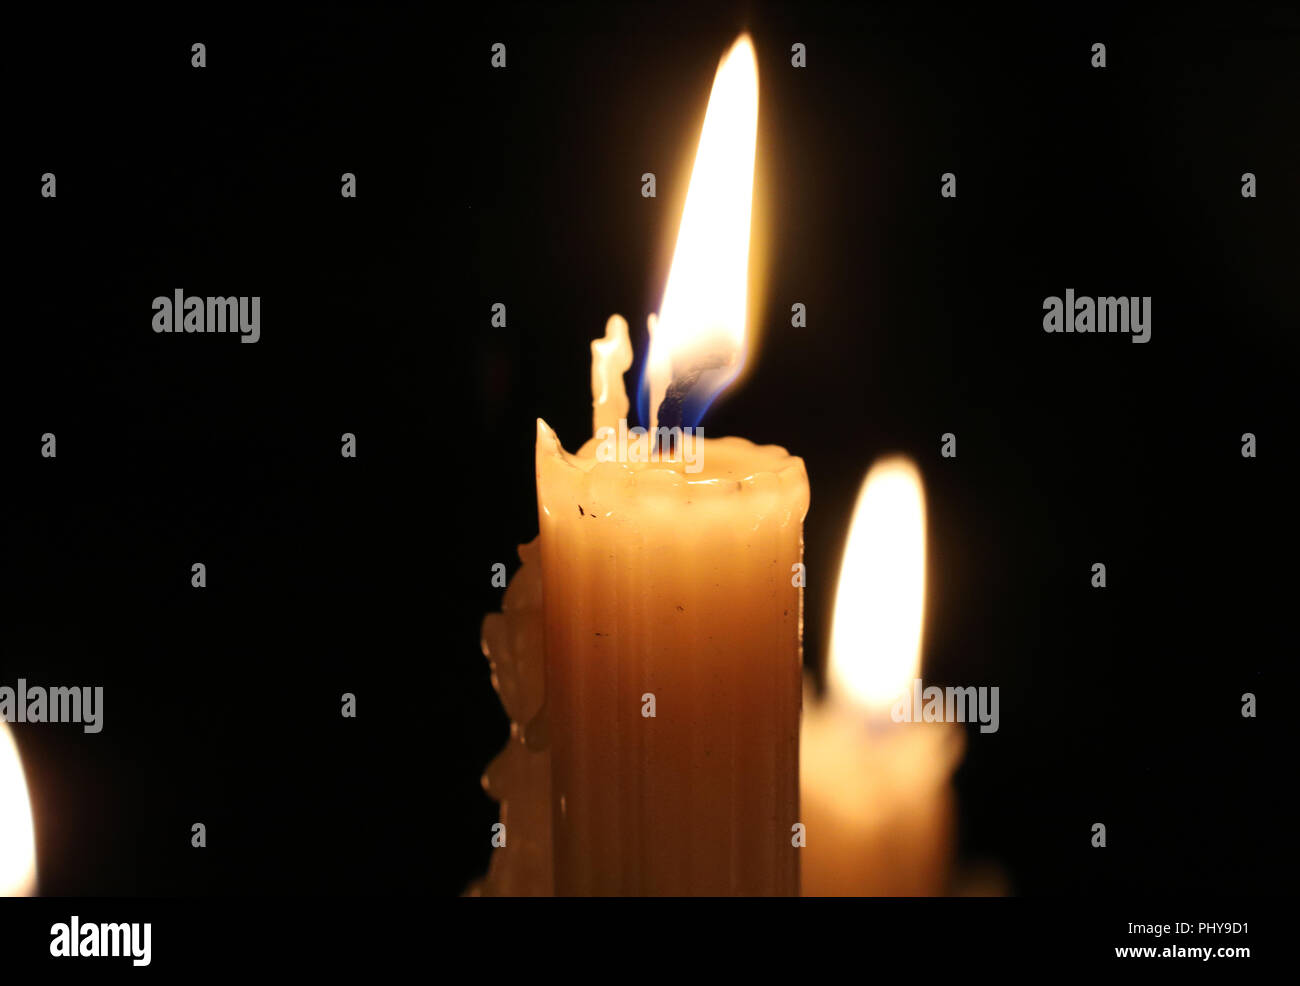 In der Nähe von brennenden Kerzen in der Dunkelheit. Kerze Flamme, Docht.  Weihnachten, Neujahr, Grußkarte, Allerheiligen, All Hallows Eve, Kirche,  Religion, Glaube, Gebet, Urlaub, magisch Stockfotografie - Alamy